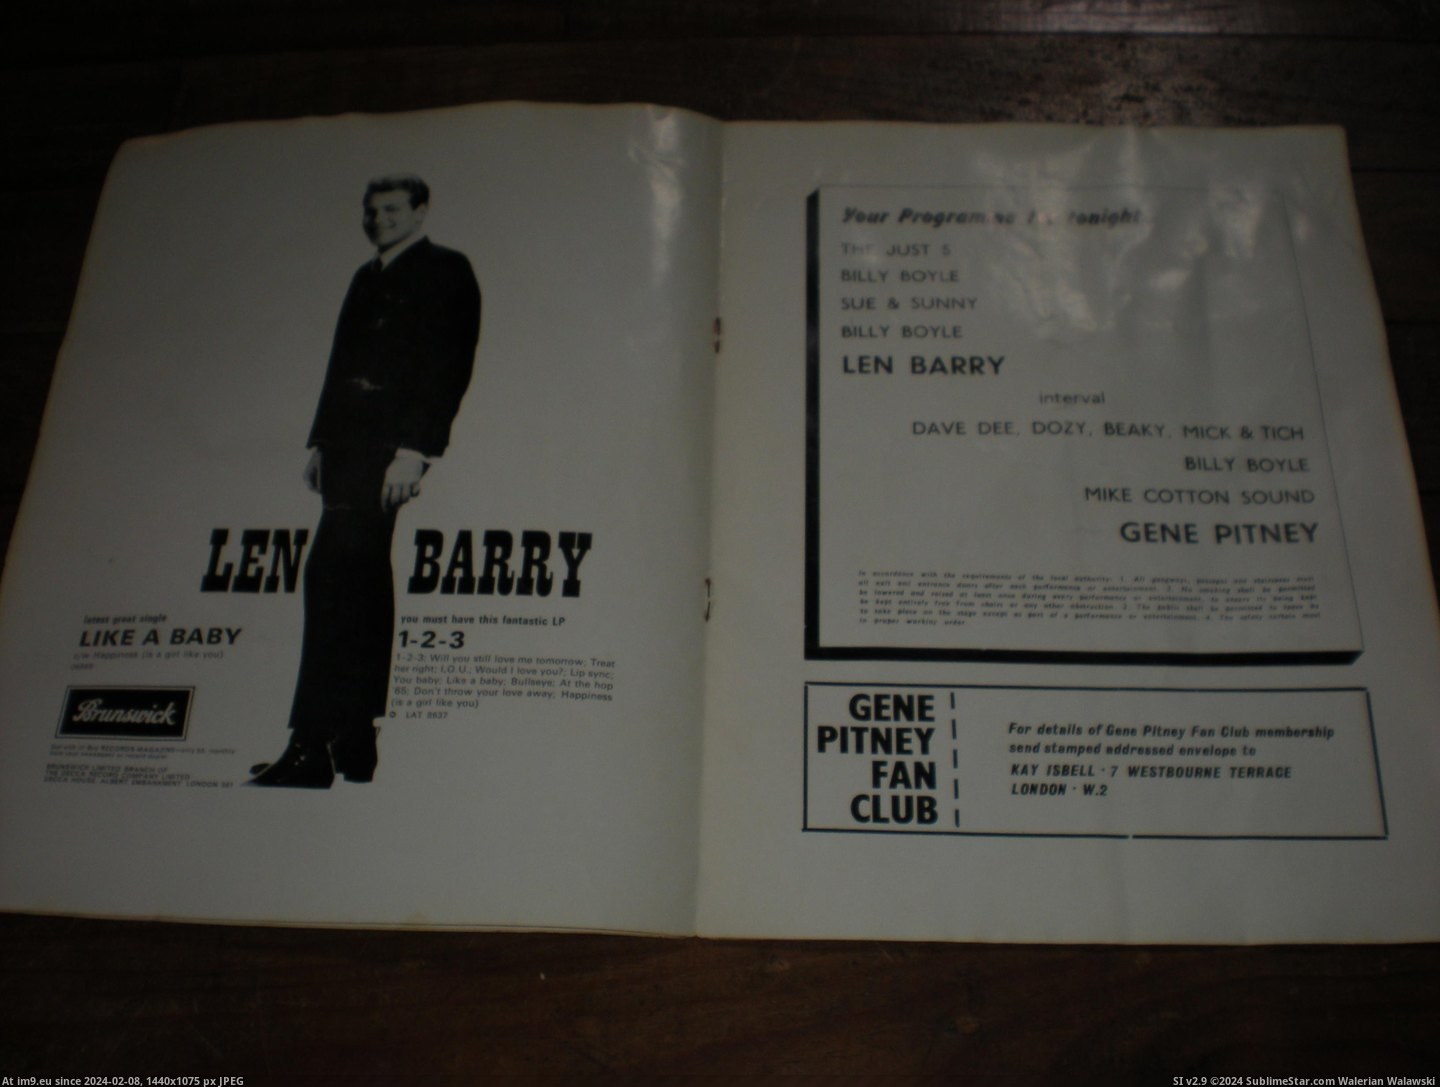 #Gene #Pitney #Prog Gene Pitney prog 4 Pic. (Obraz z album new 1))